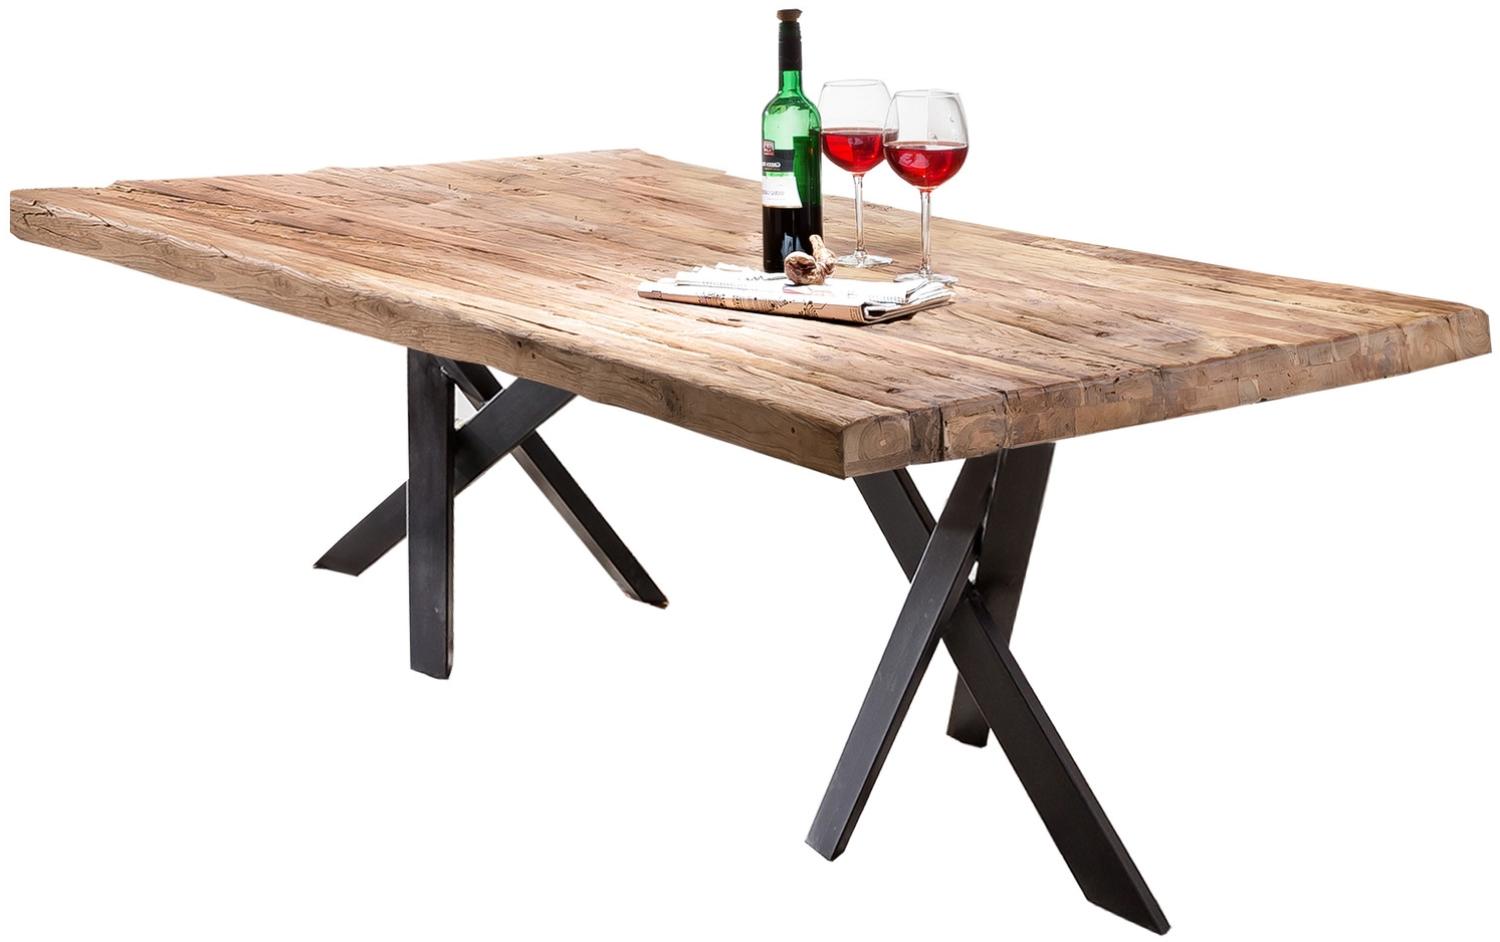 Sit Möbel Tische & Bänke Tisch 200x100 cm, Platte Teak natur, Gestell Metall antikschwarz Bild 1